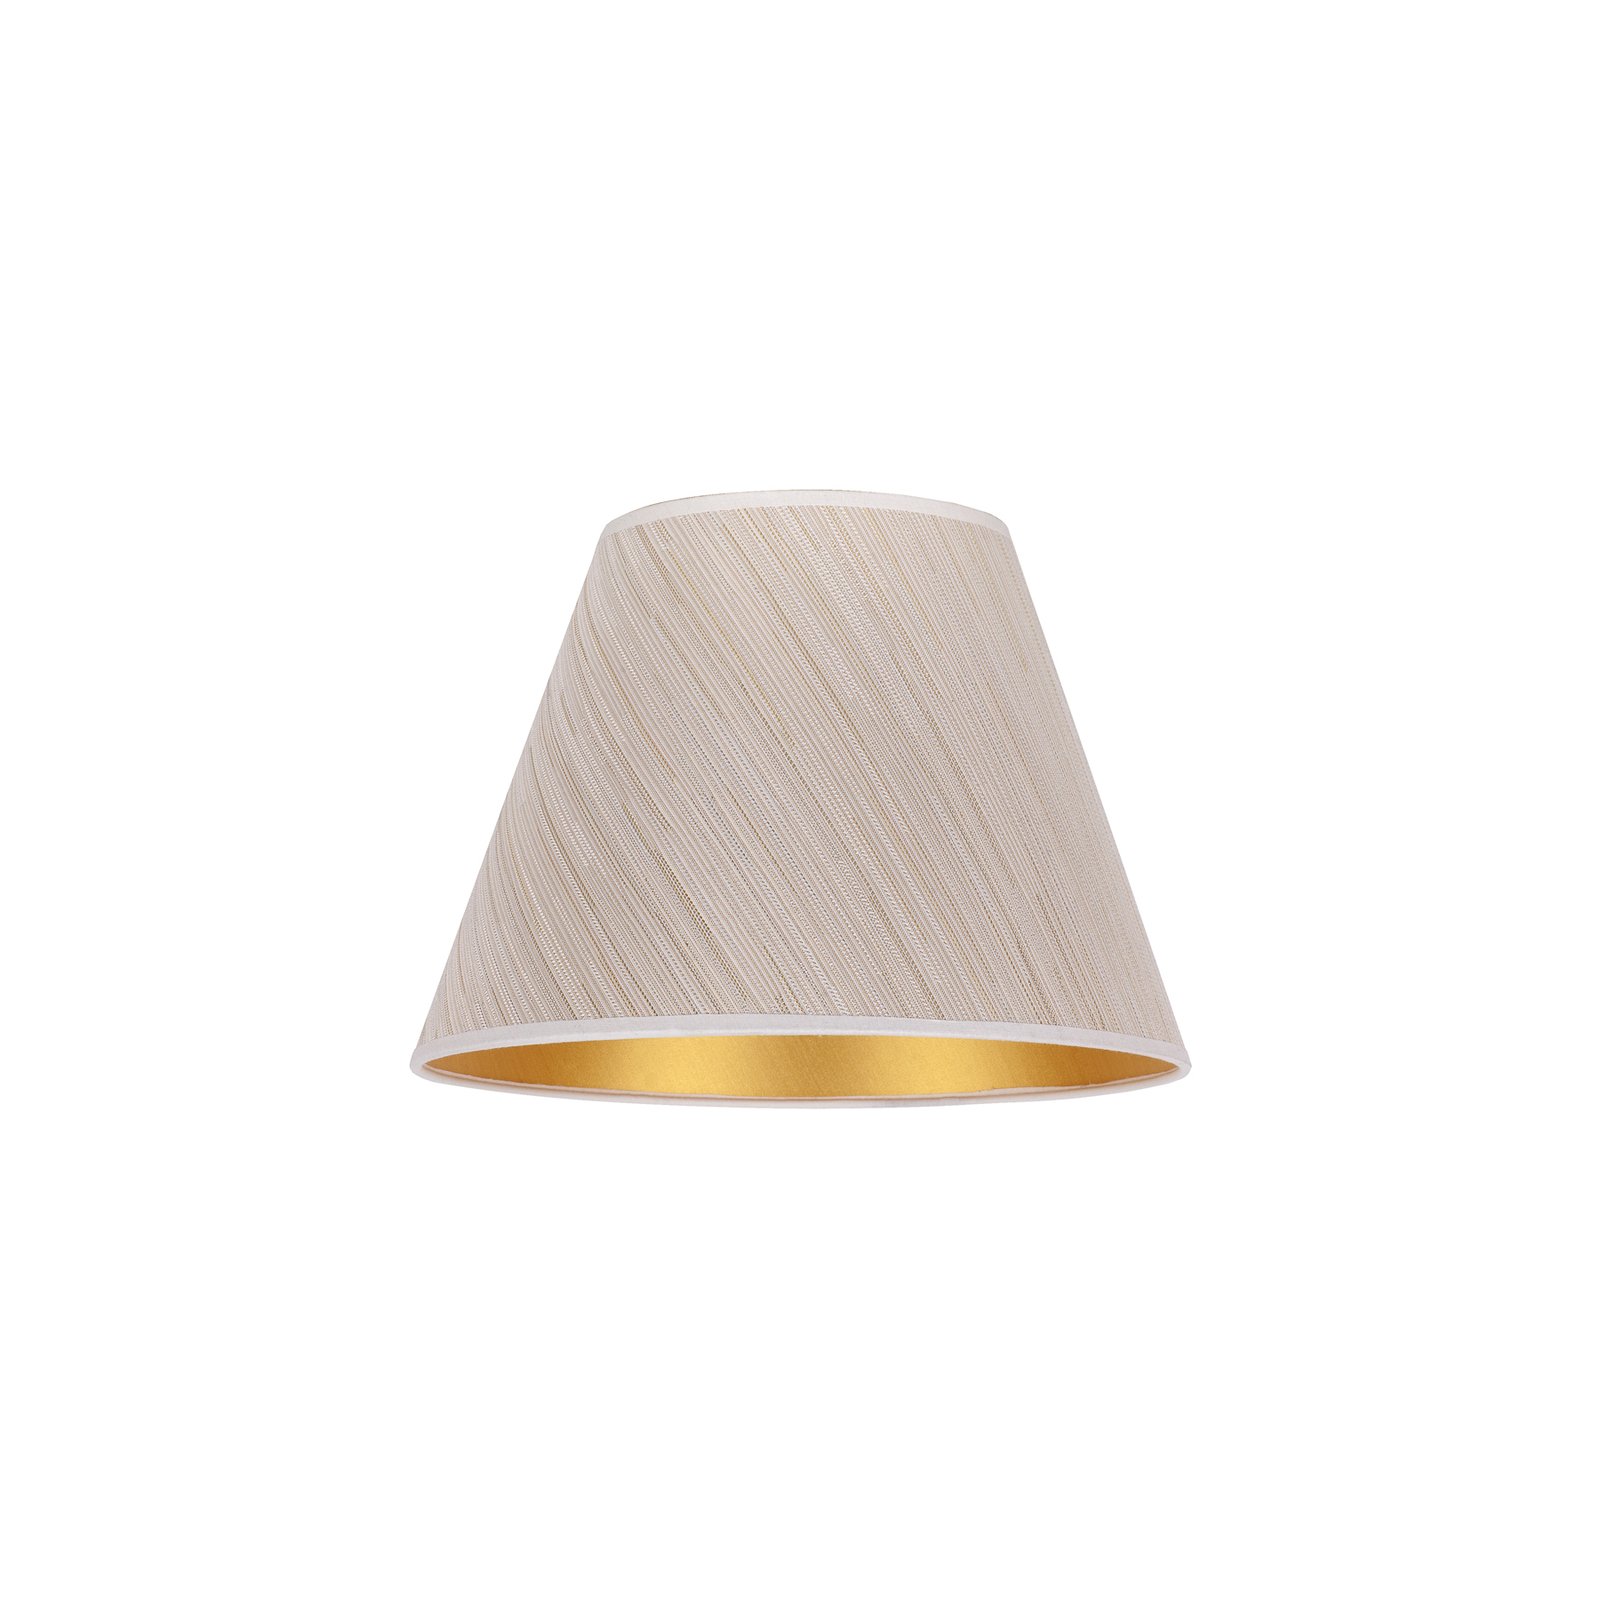 Lampeskjerm Sofia høyde 21 cm, hvit/gull stripete